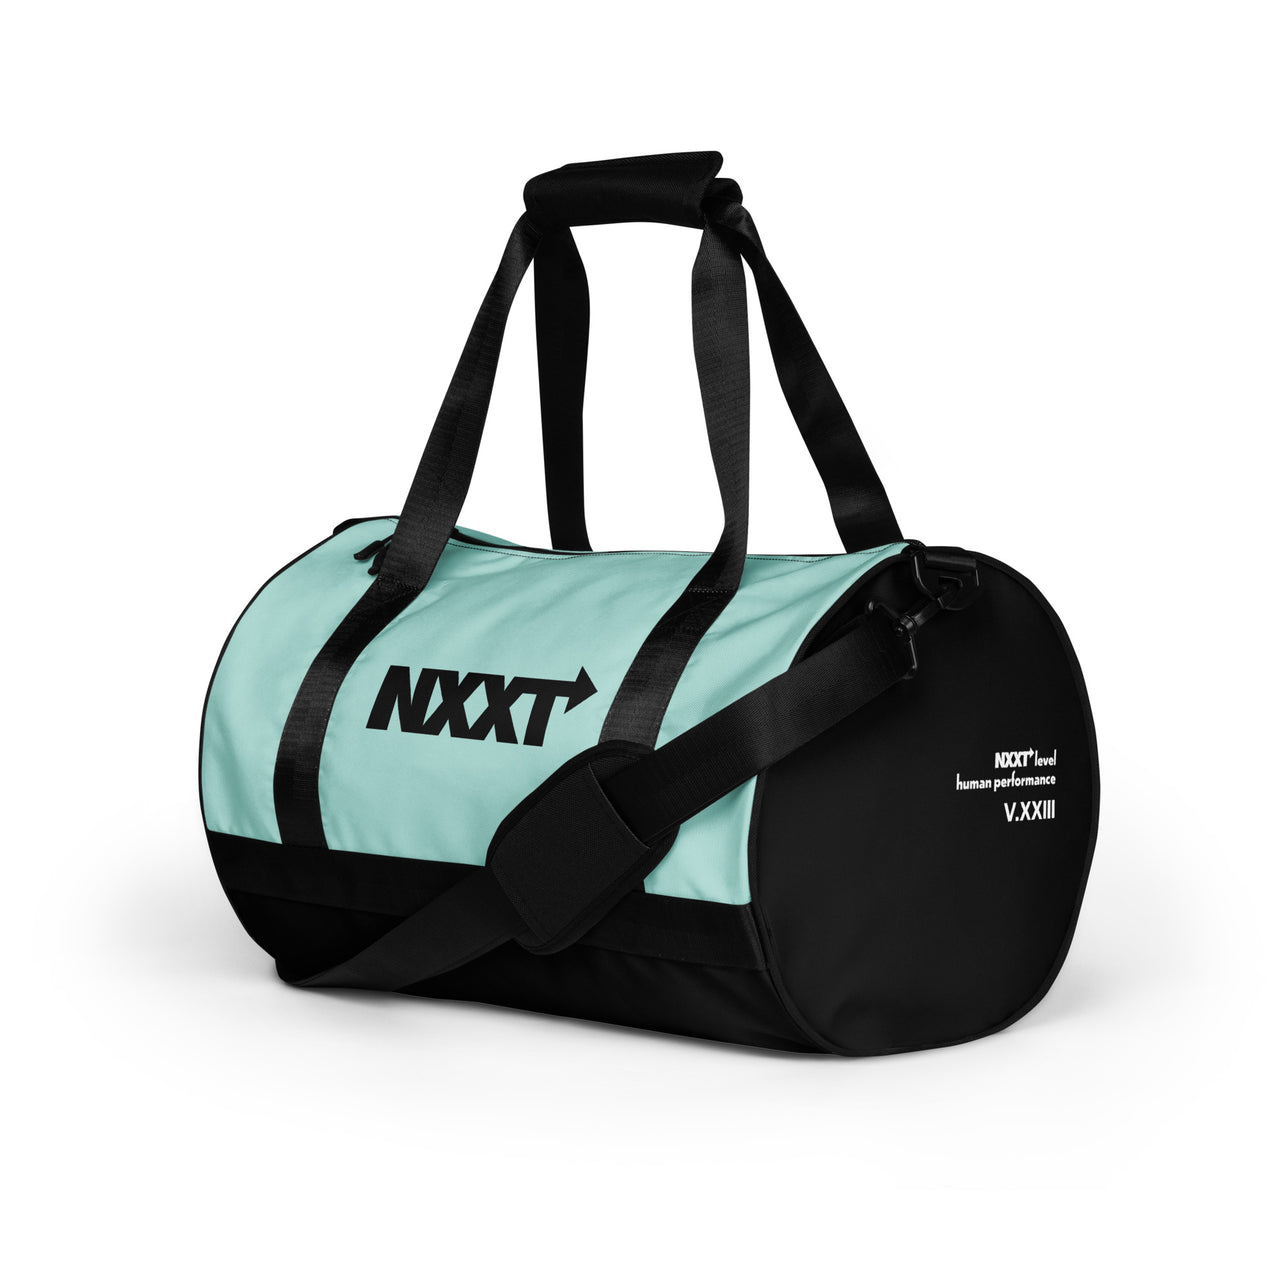 NXXT V.XXIII gym bag - Teal/Black - Shady Lion Coffee Co.